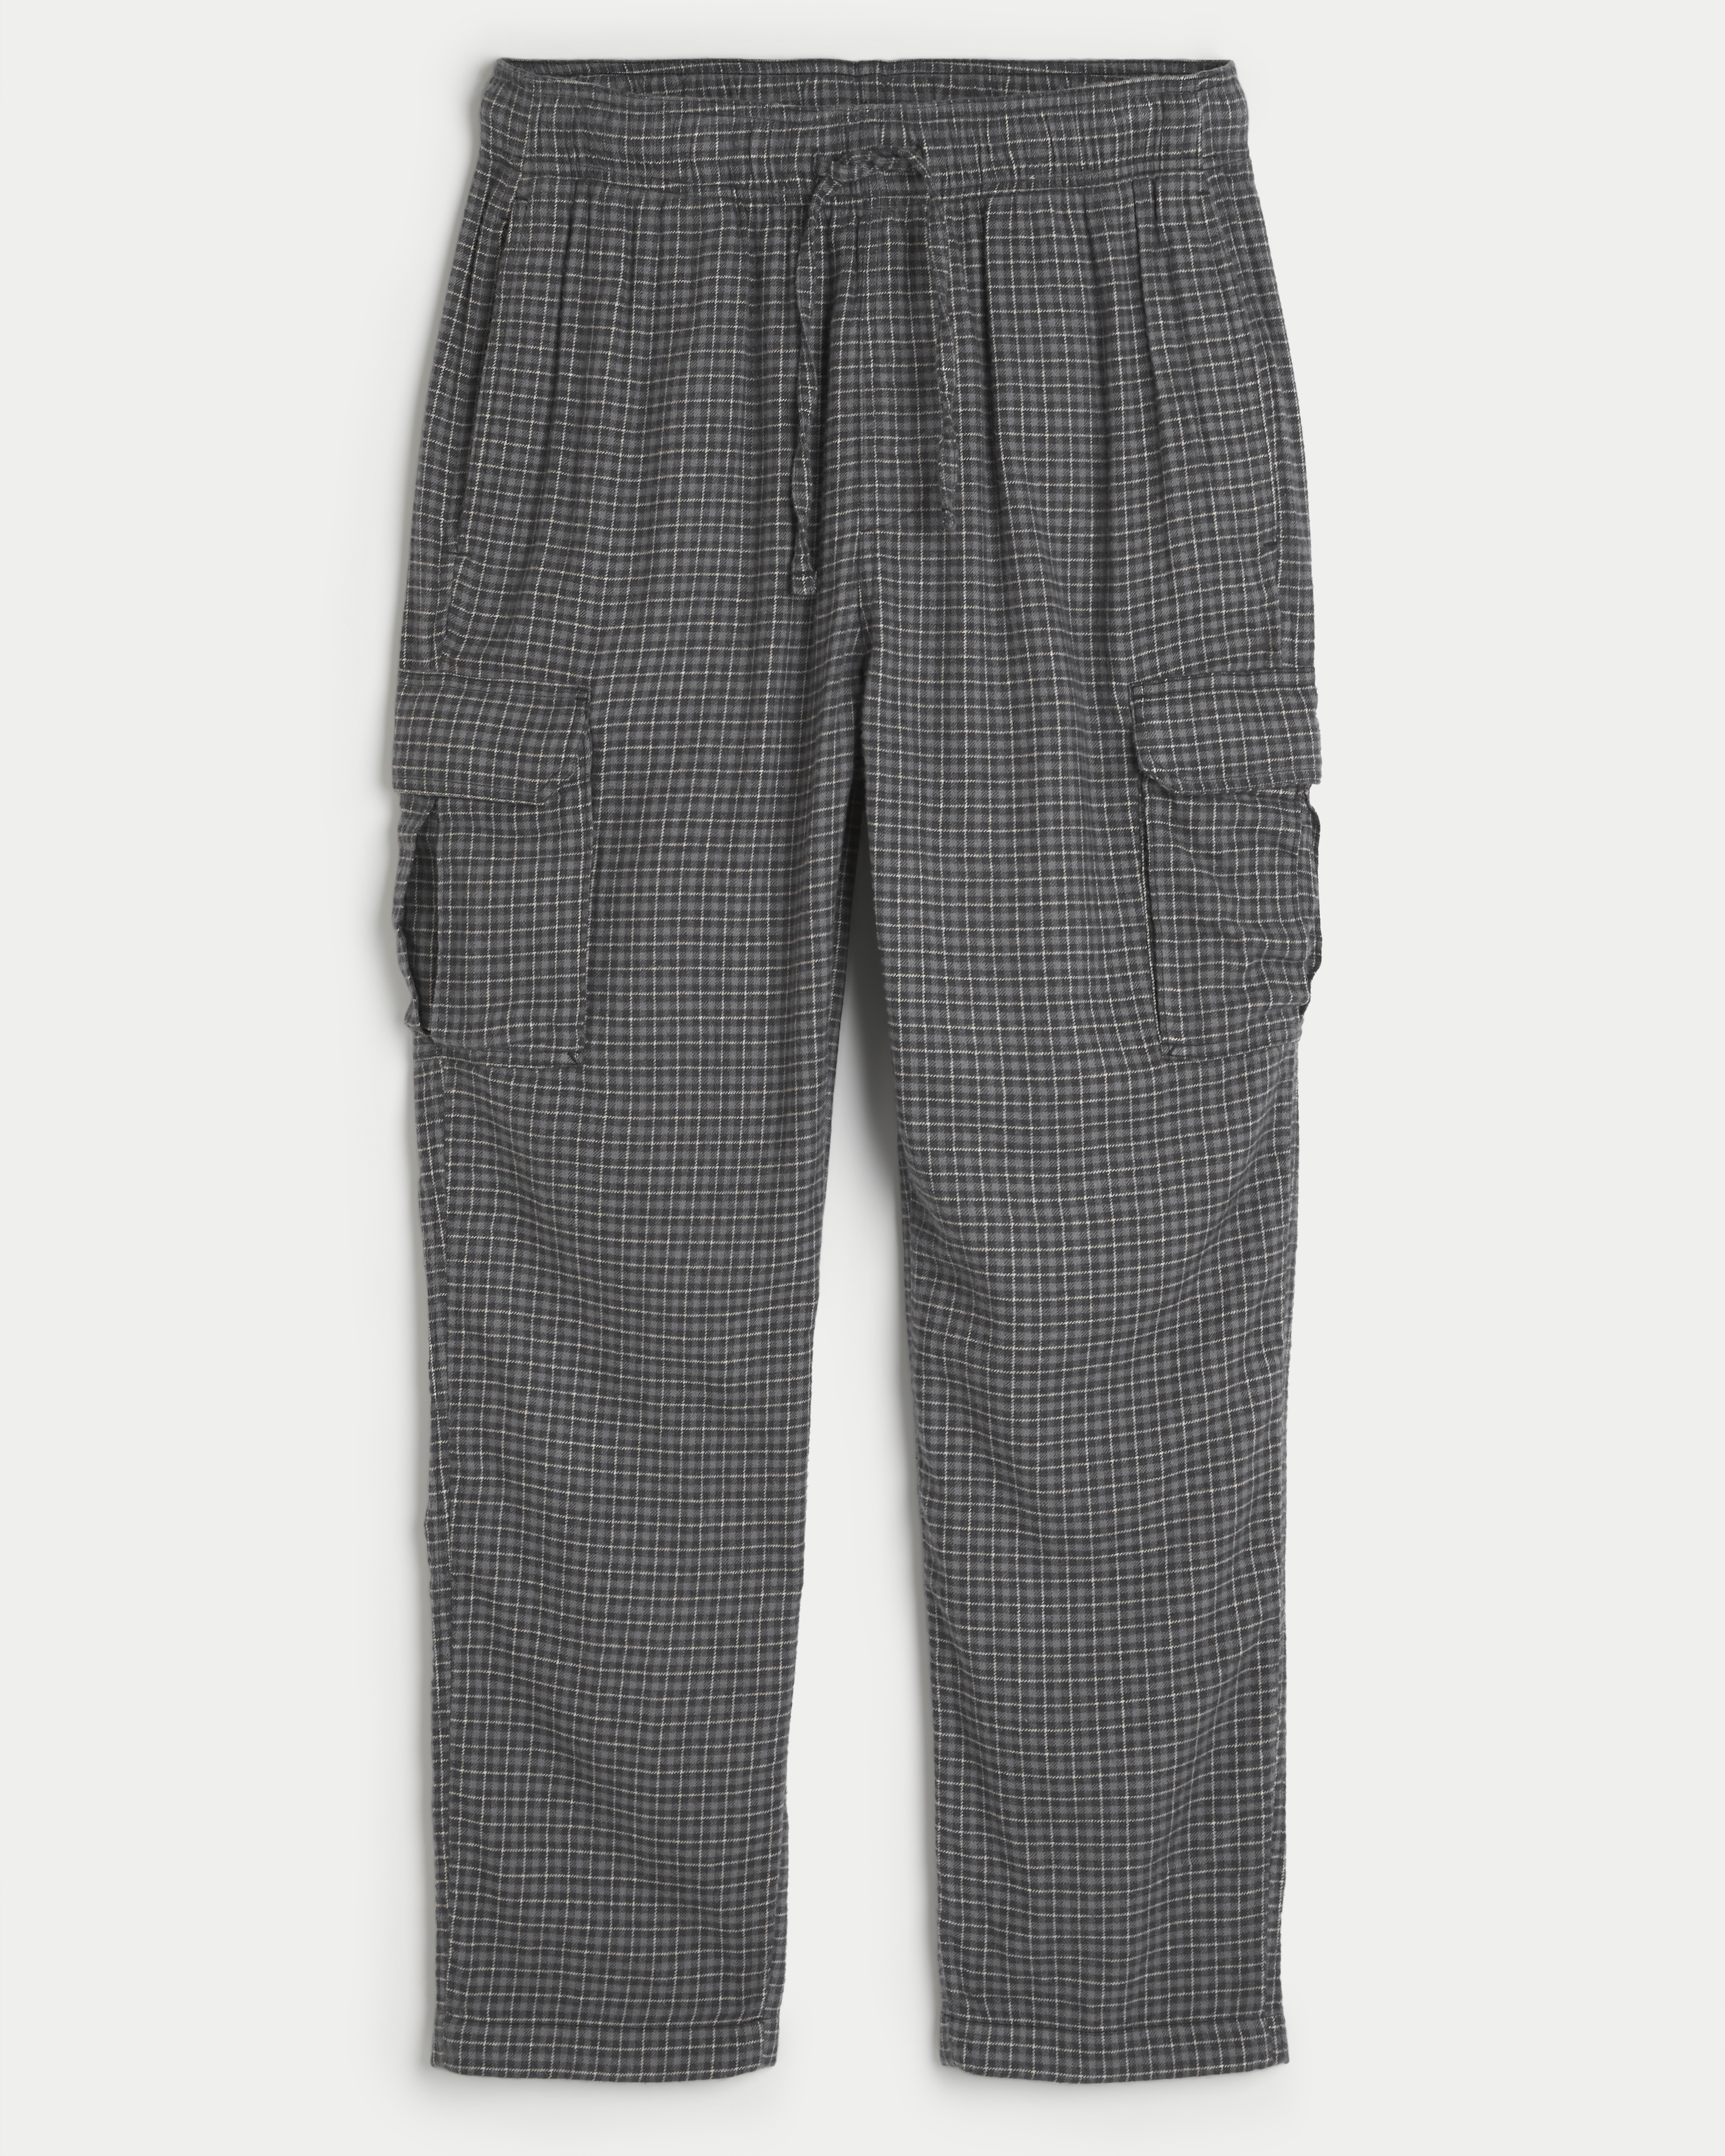 24/7 Cargo Pajama Pants